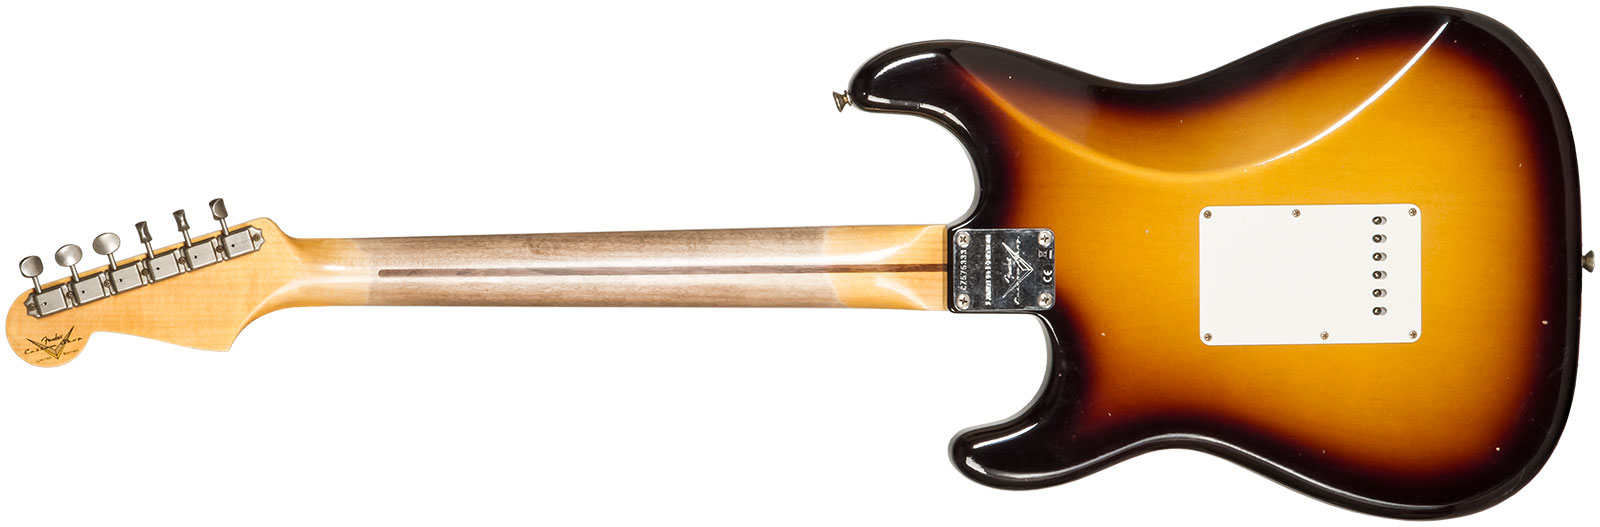 Fender Custom Shop Strat 1956 3s Trem Mn #cz575333 - Journeyman Relic 2-color Sunburst - E-Gitarre in Str-Form - Variation 1